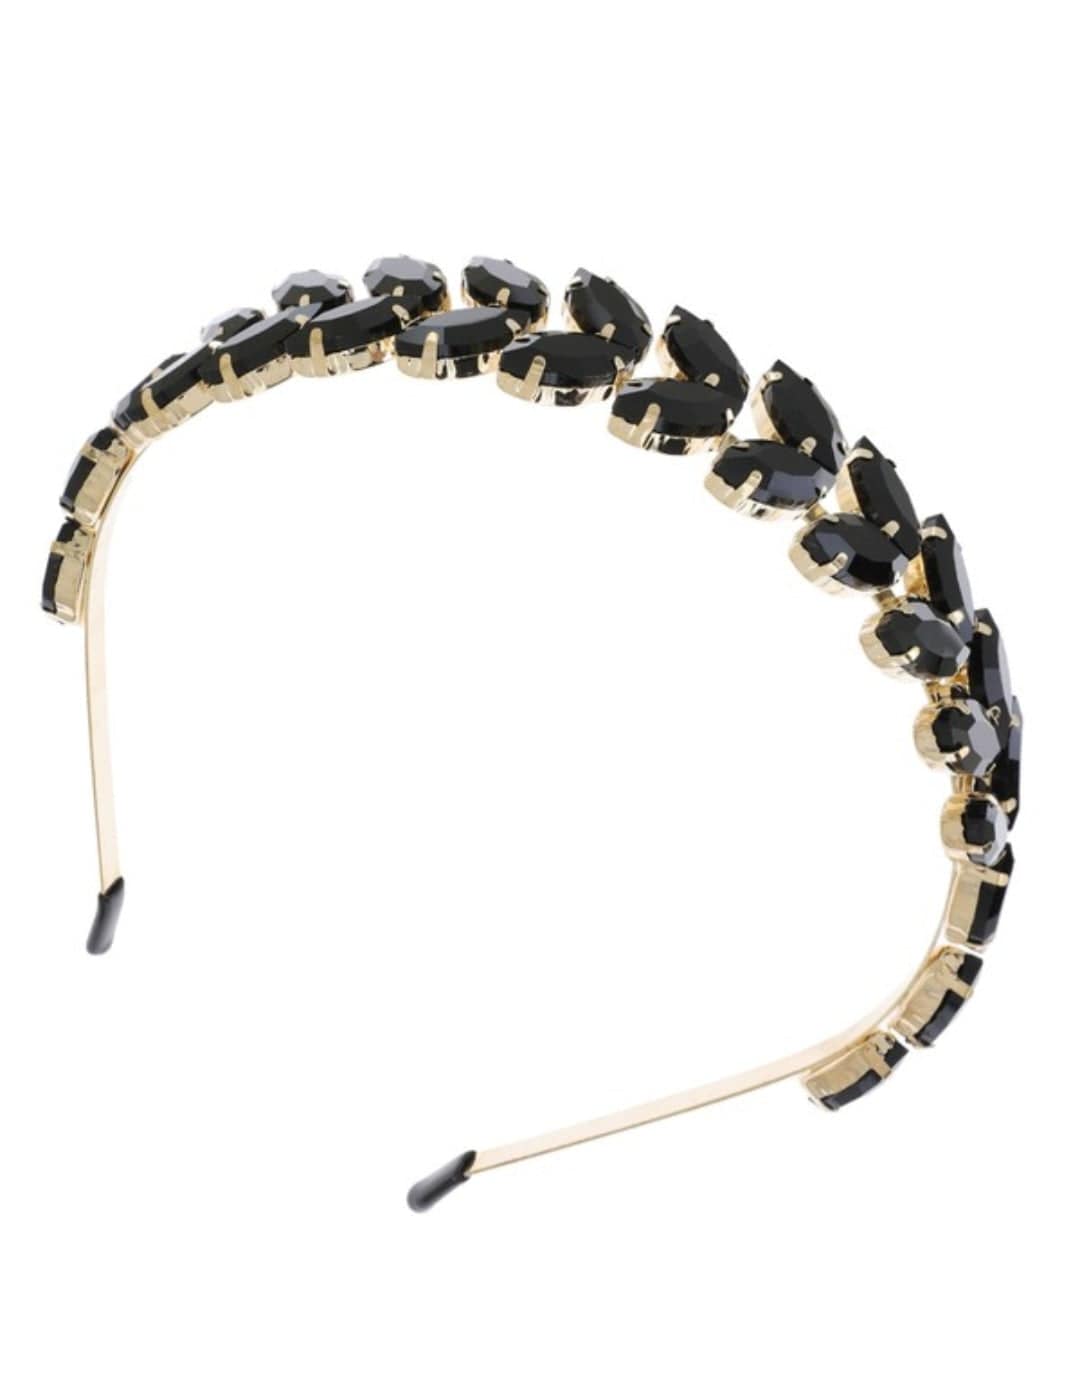 YD Boutique LLC Handbag & Wallet Accessories Leaf / Black Rhinestone Crystal Headband